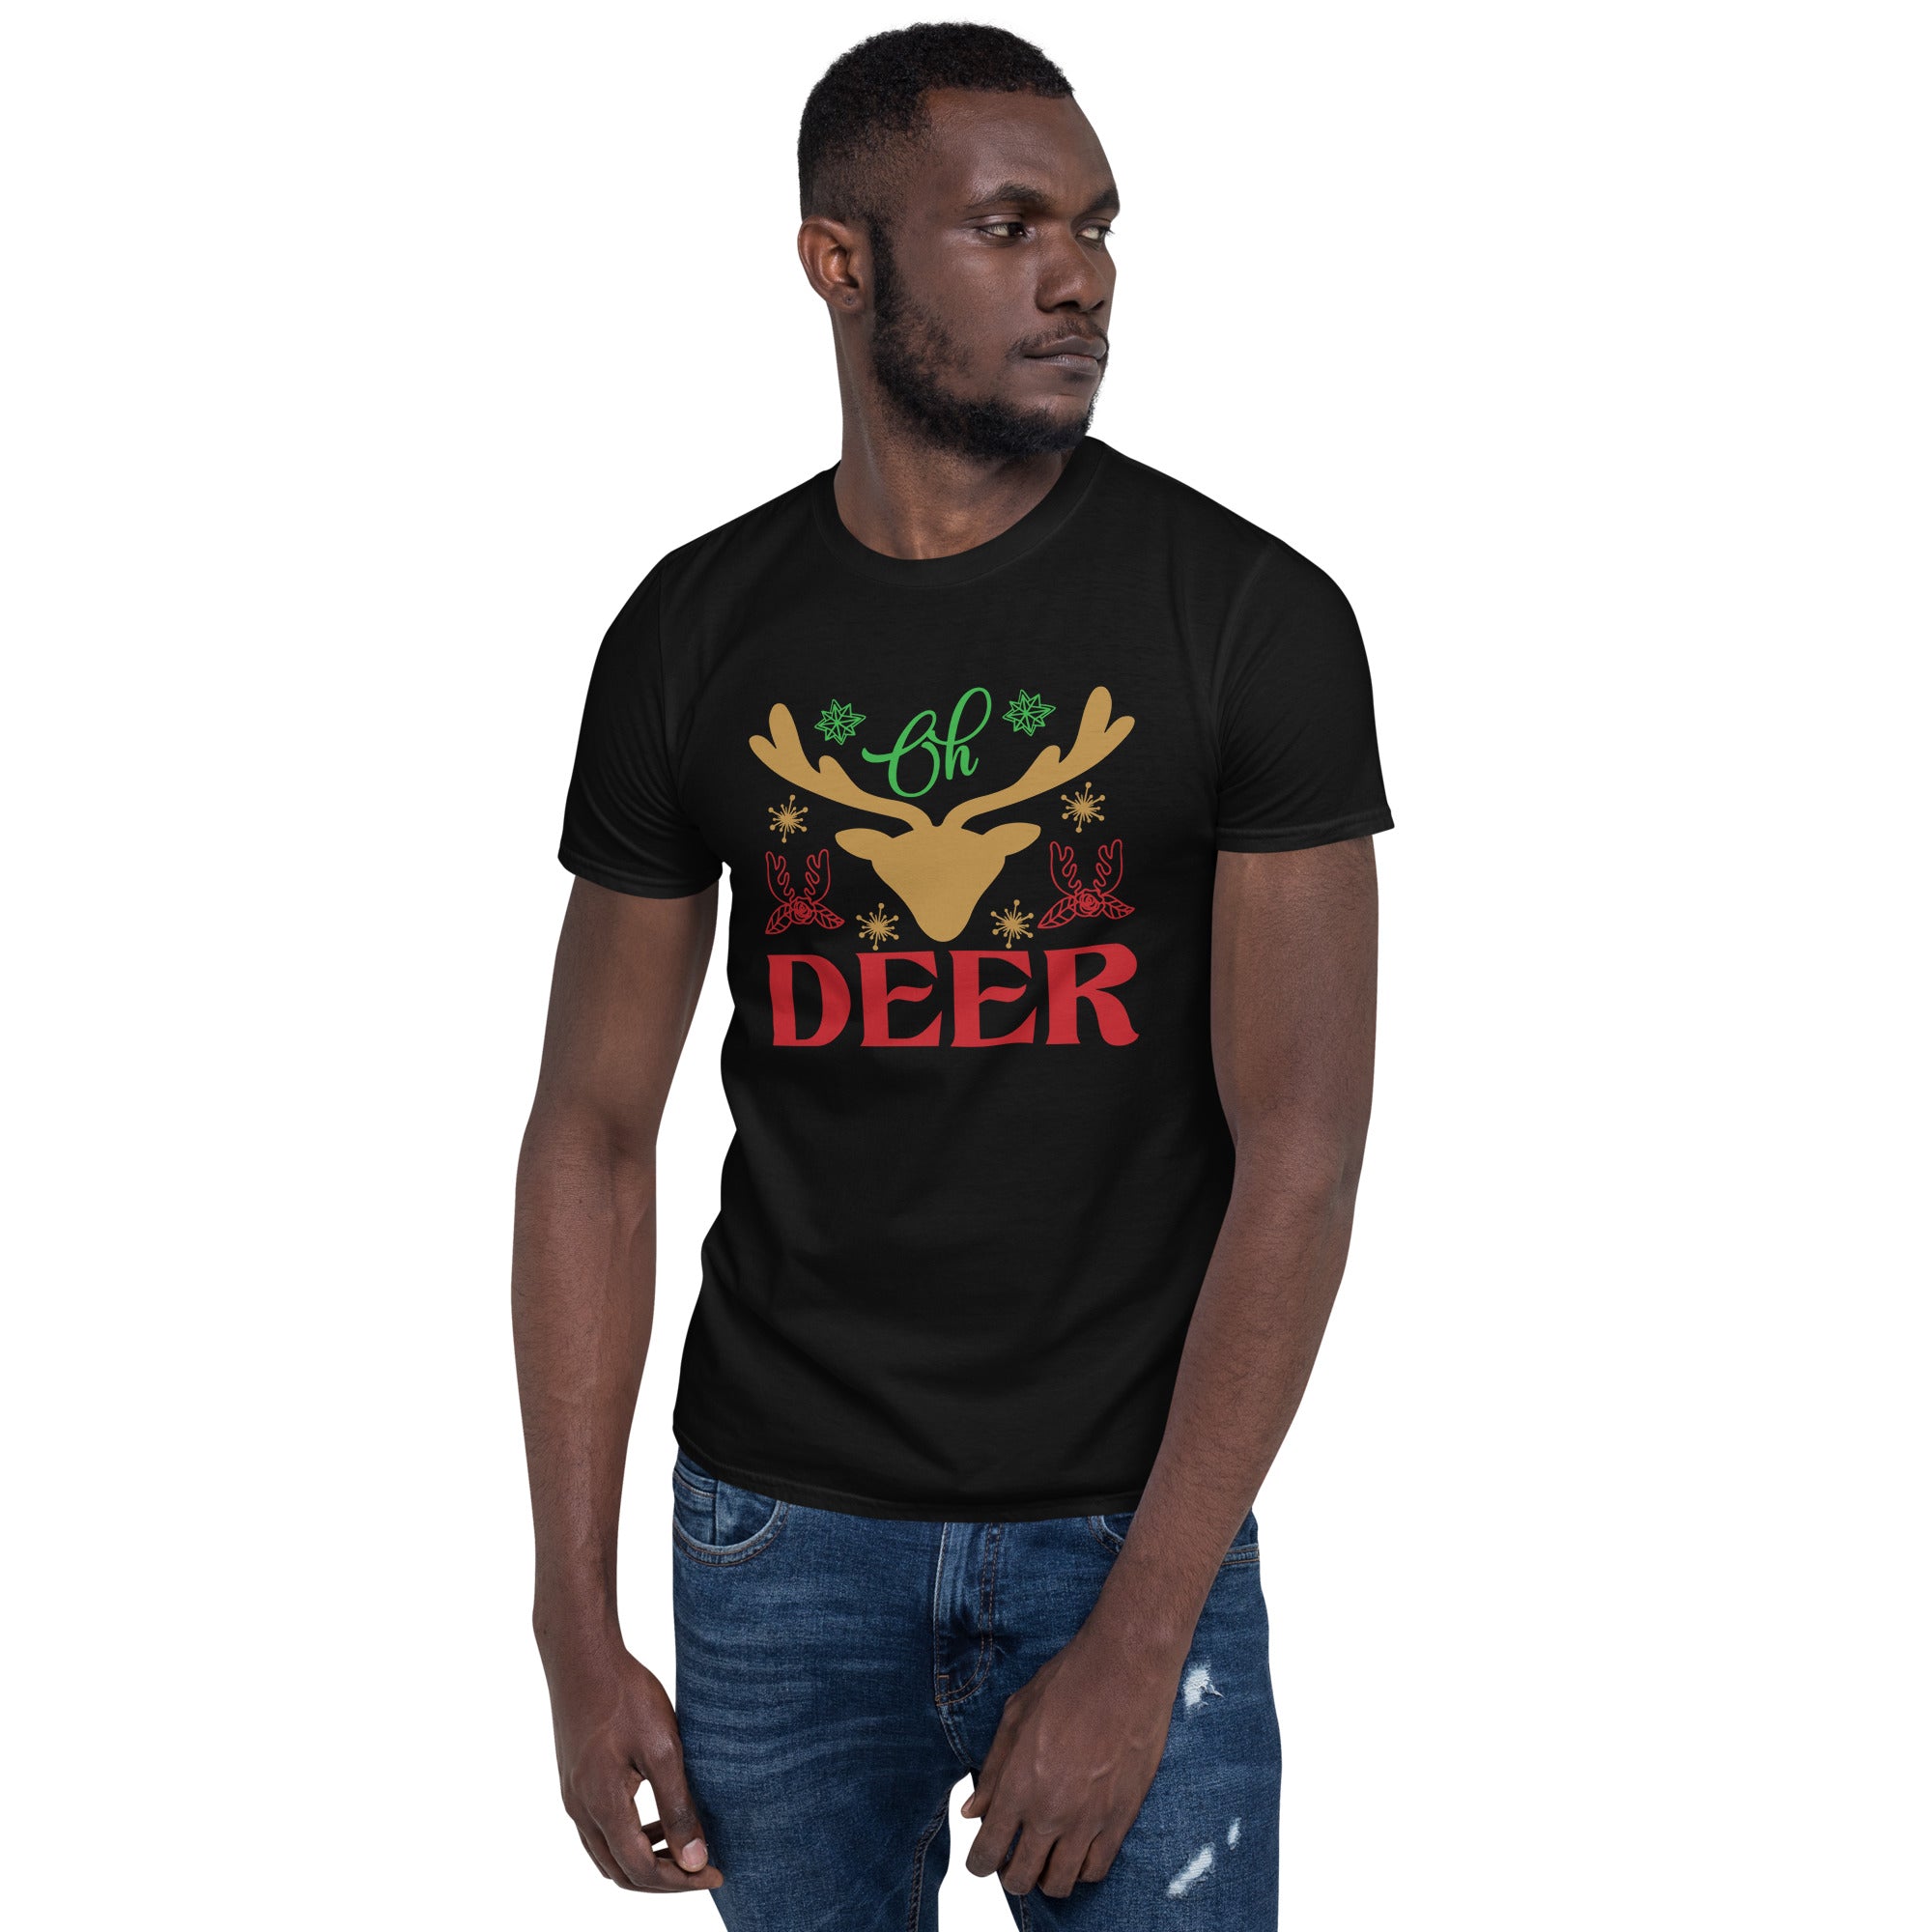 Oh Deer - Short-Sleeve Unisex T-Shirt